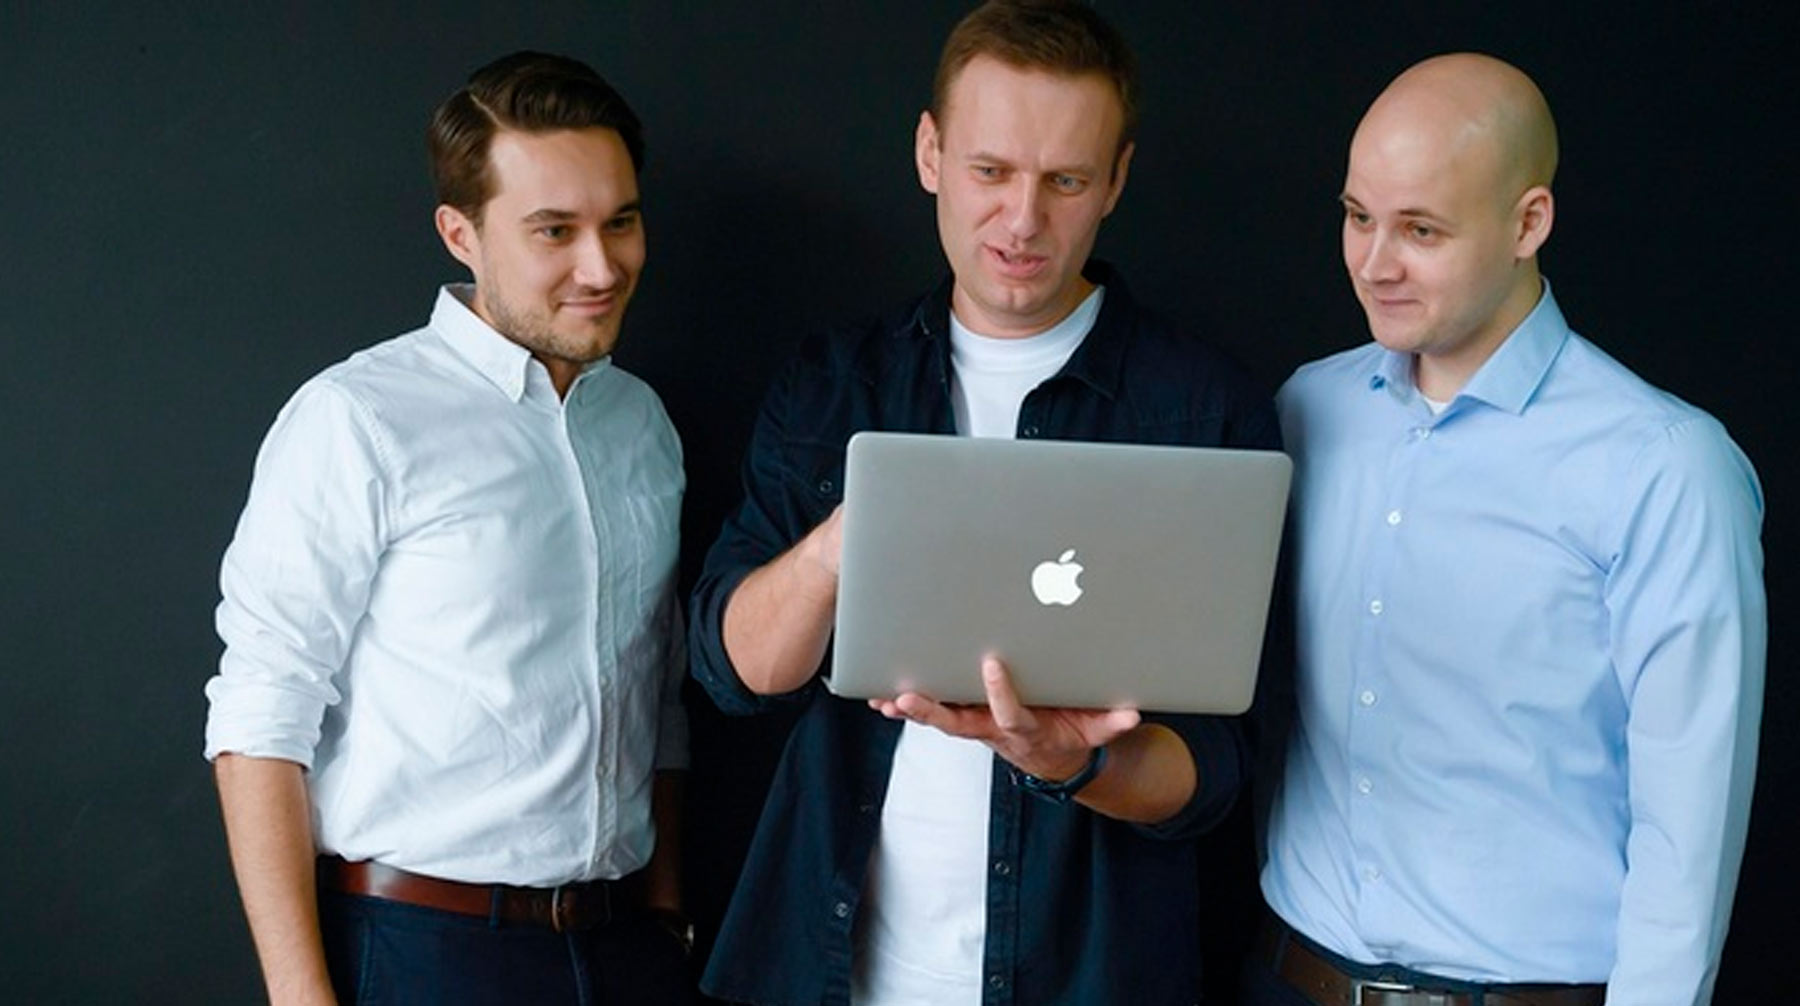 Предприниматель пообещал оплатить долг ФБК в размере 58,4 миллиона рублей Учредитель ФБК Алексей Навальный (посередине) и юристы компании Александр Головач (слева) и Владлен Лось (справа)